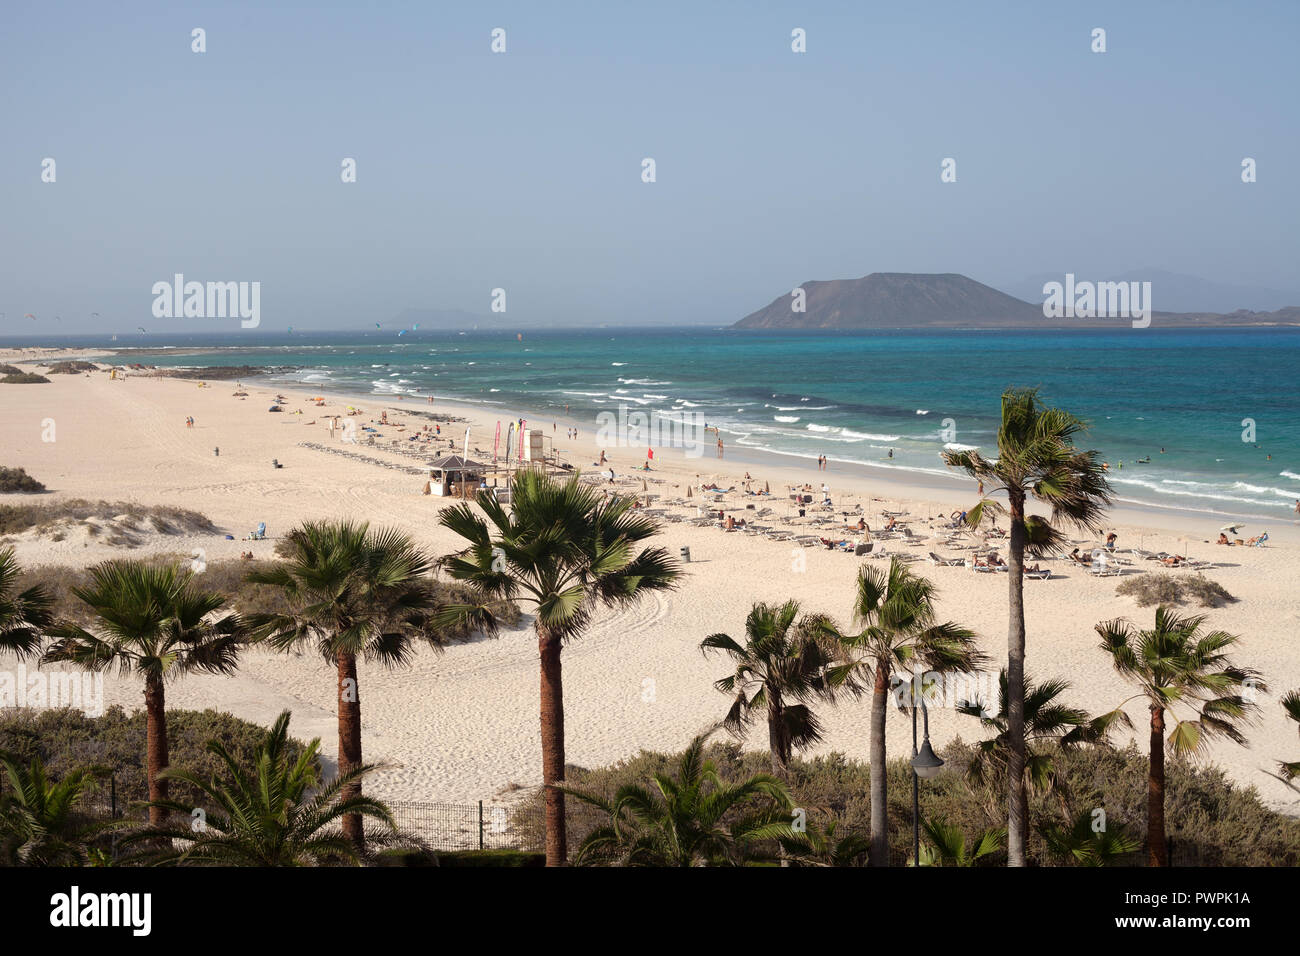 Playas Grandes with Los Lobos island in the distance, Corralejo, La Oliva, Fuerteventura, Canary Islands, Spain Stock Photo